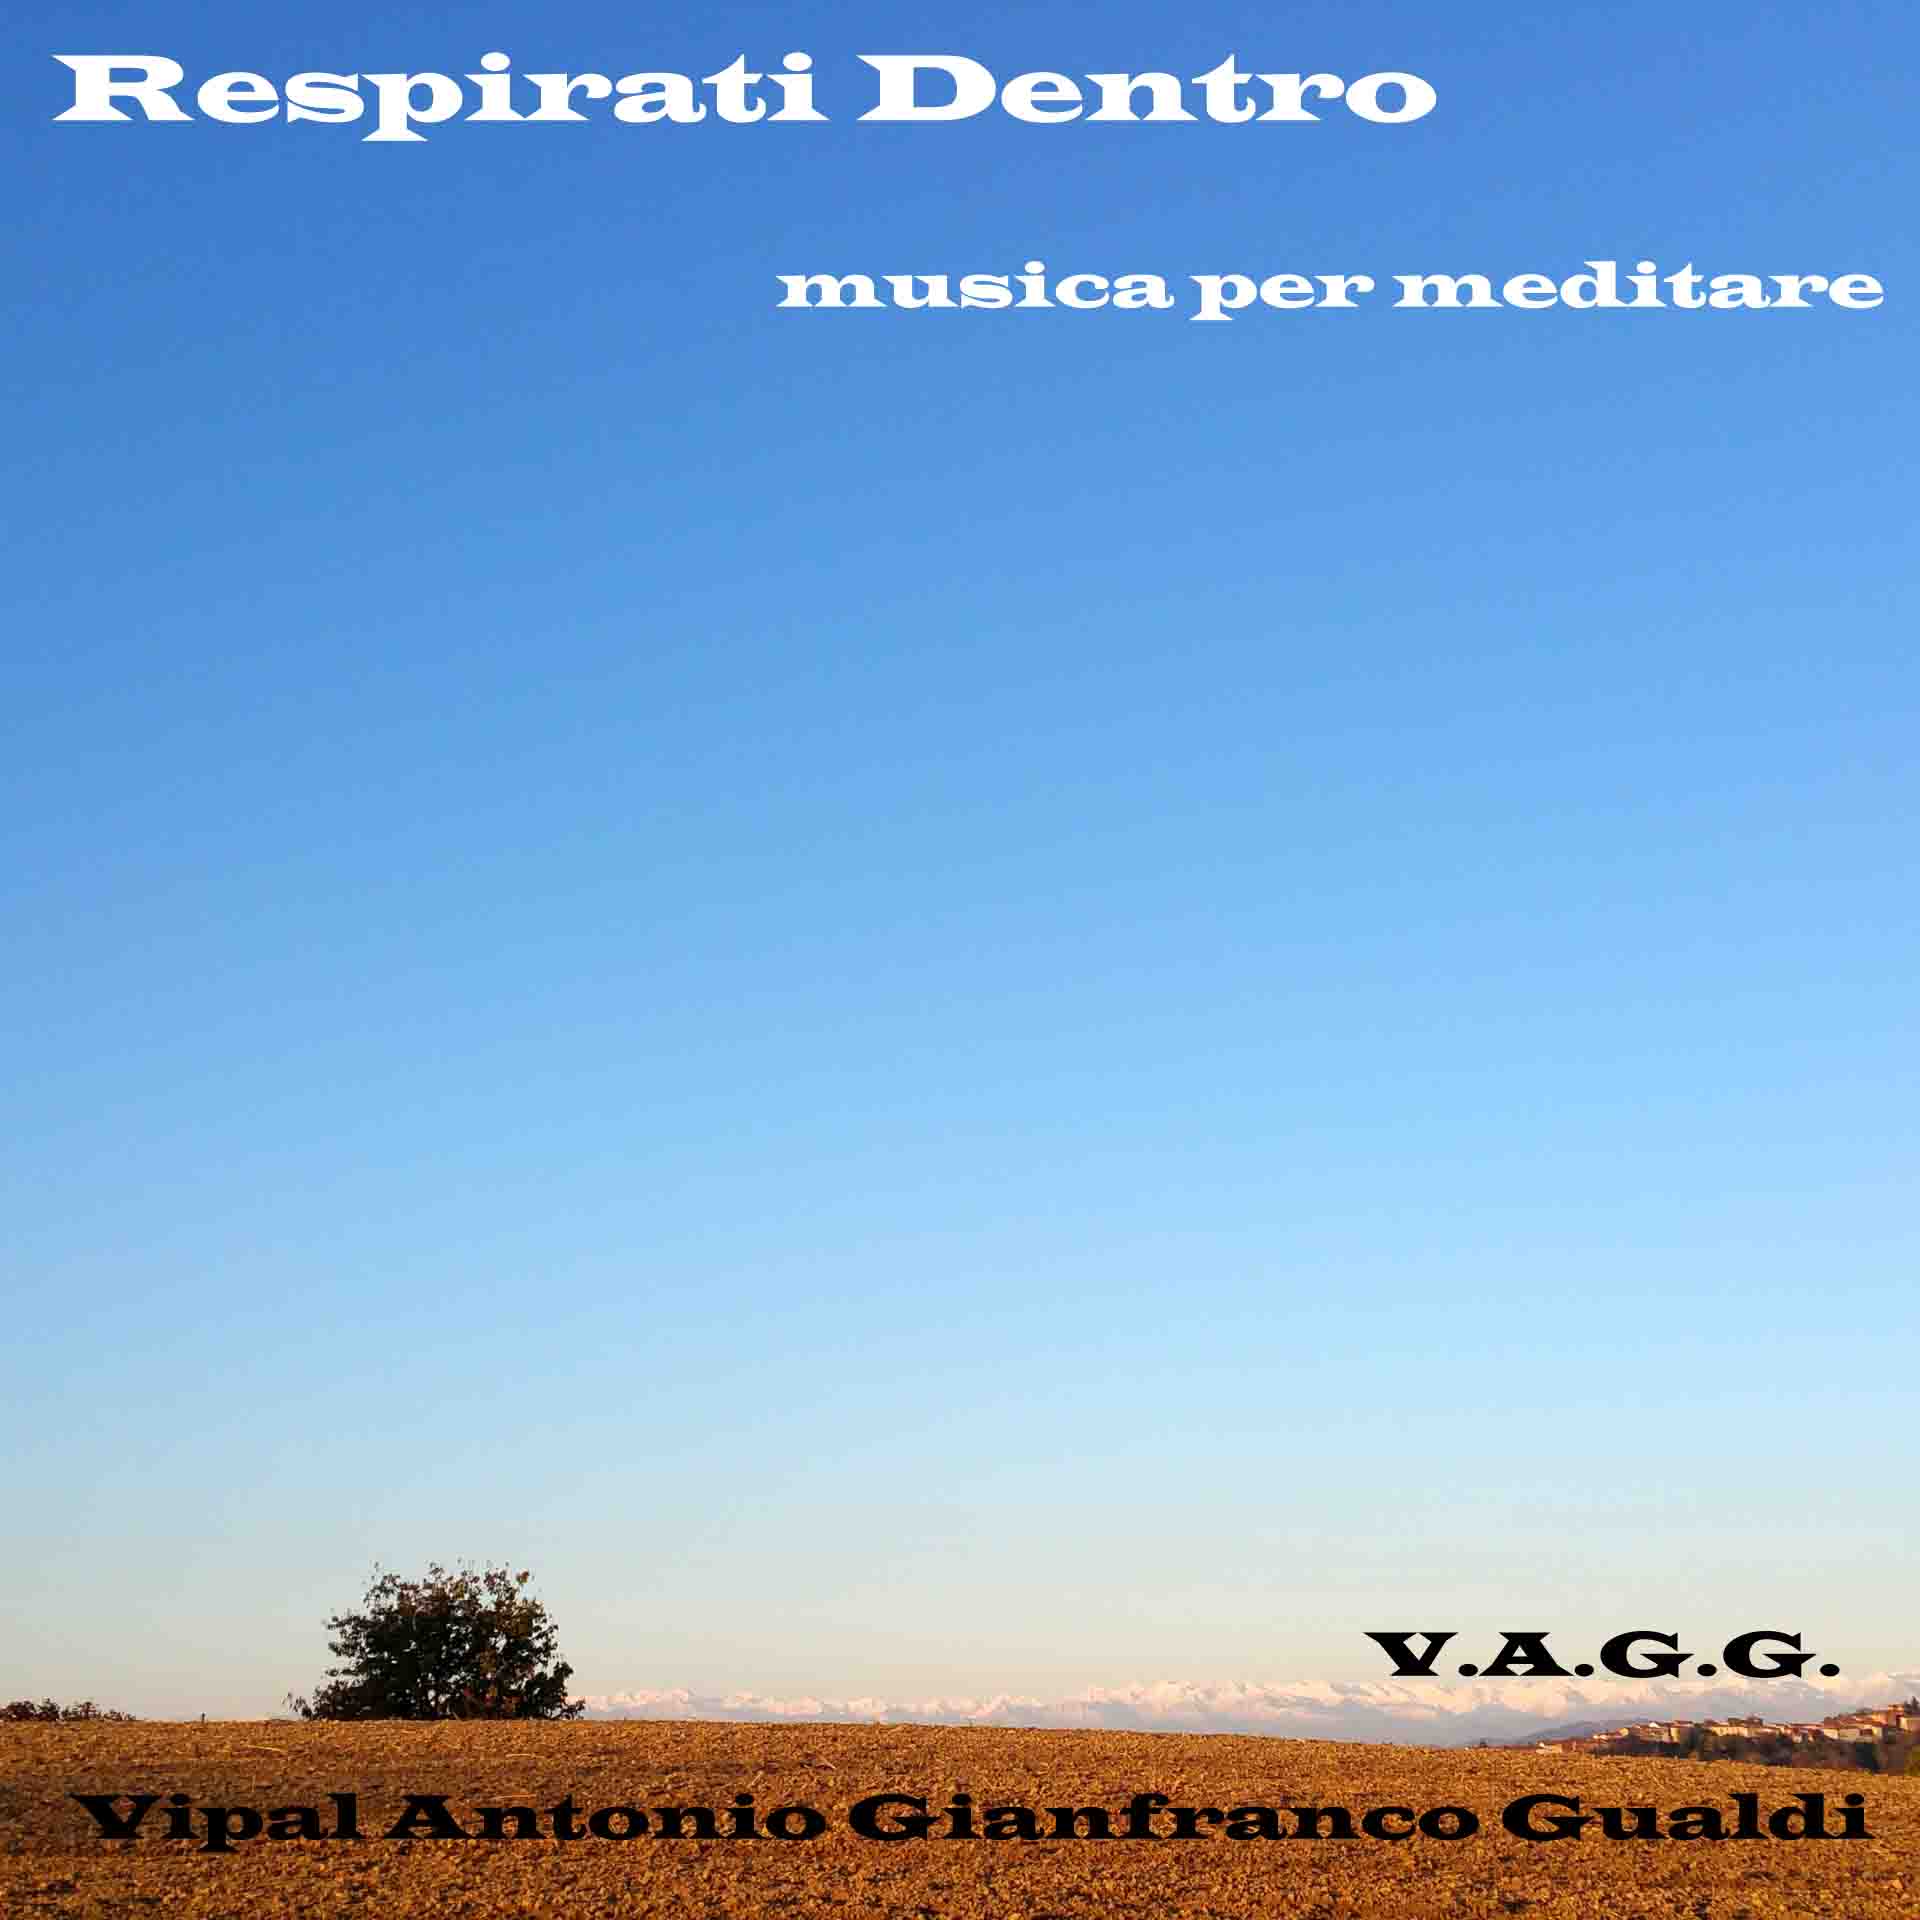 Respirati dentro- musa per meditare V.A.G.G. Vipal Antonio Gianfranco Gualdi